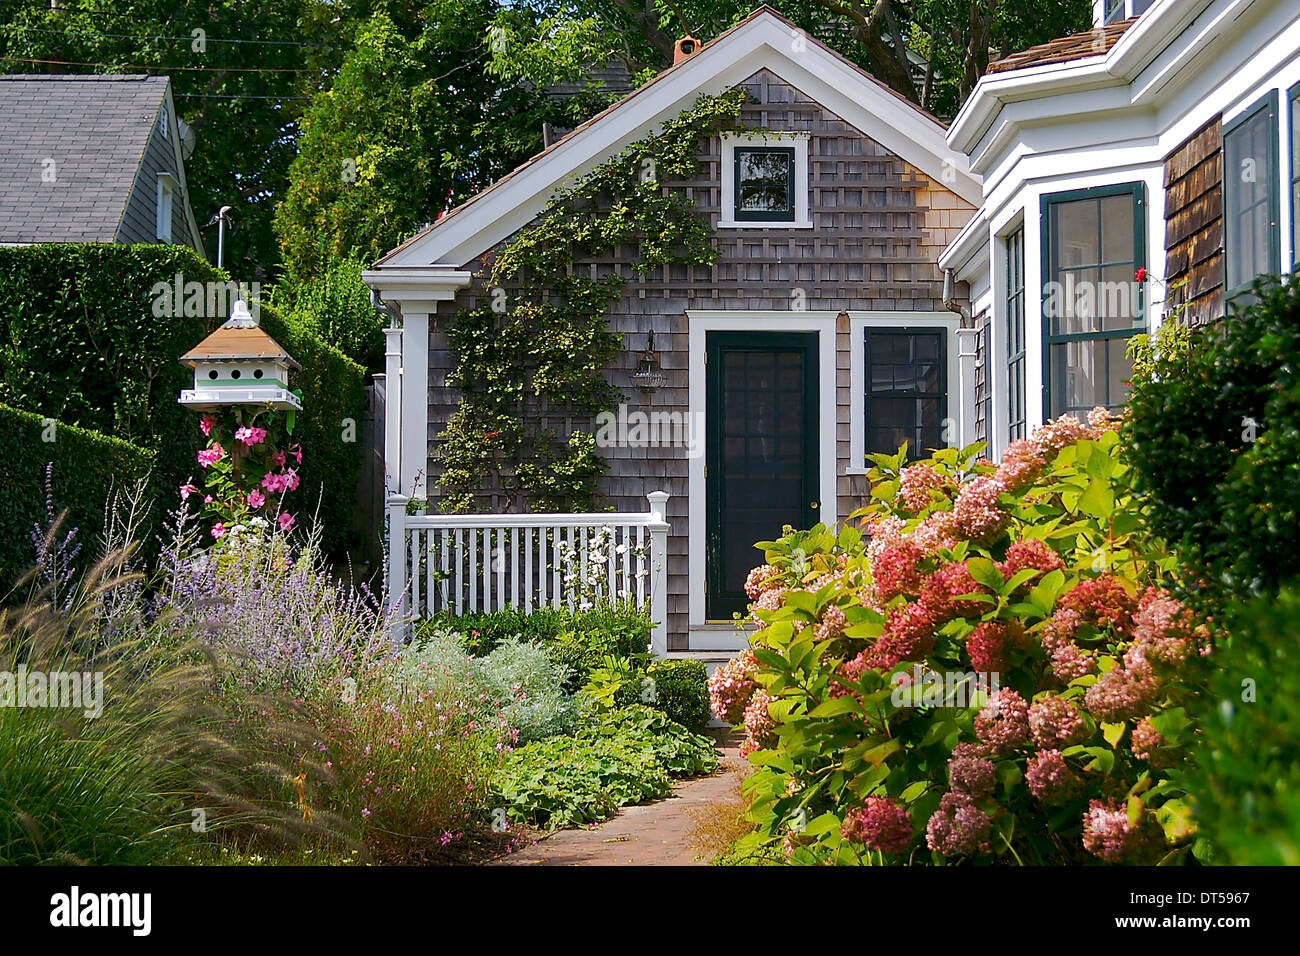 Una casa bonita casita para aves y rodeado de flores y vegetación exuberante Foto de stock